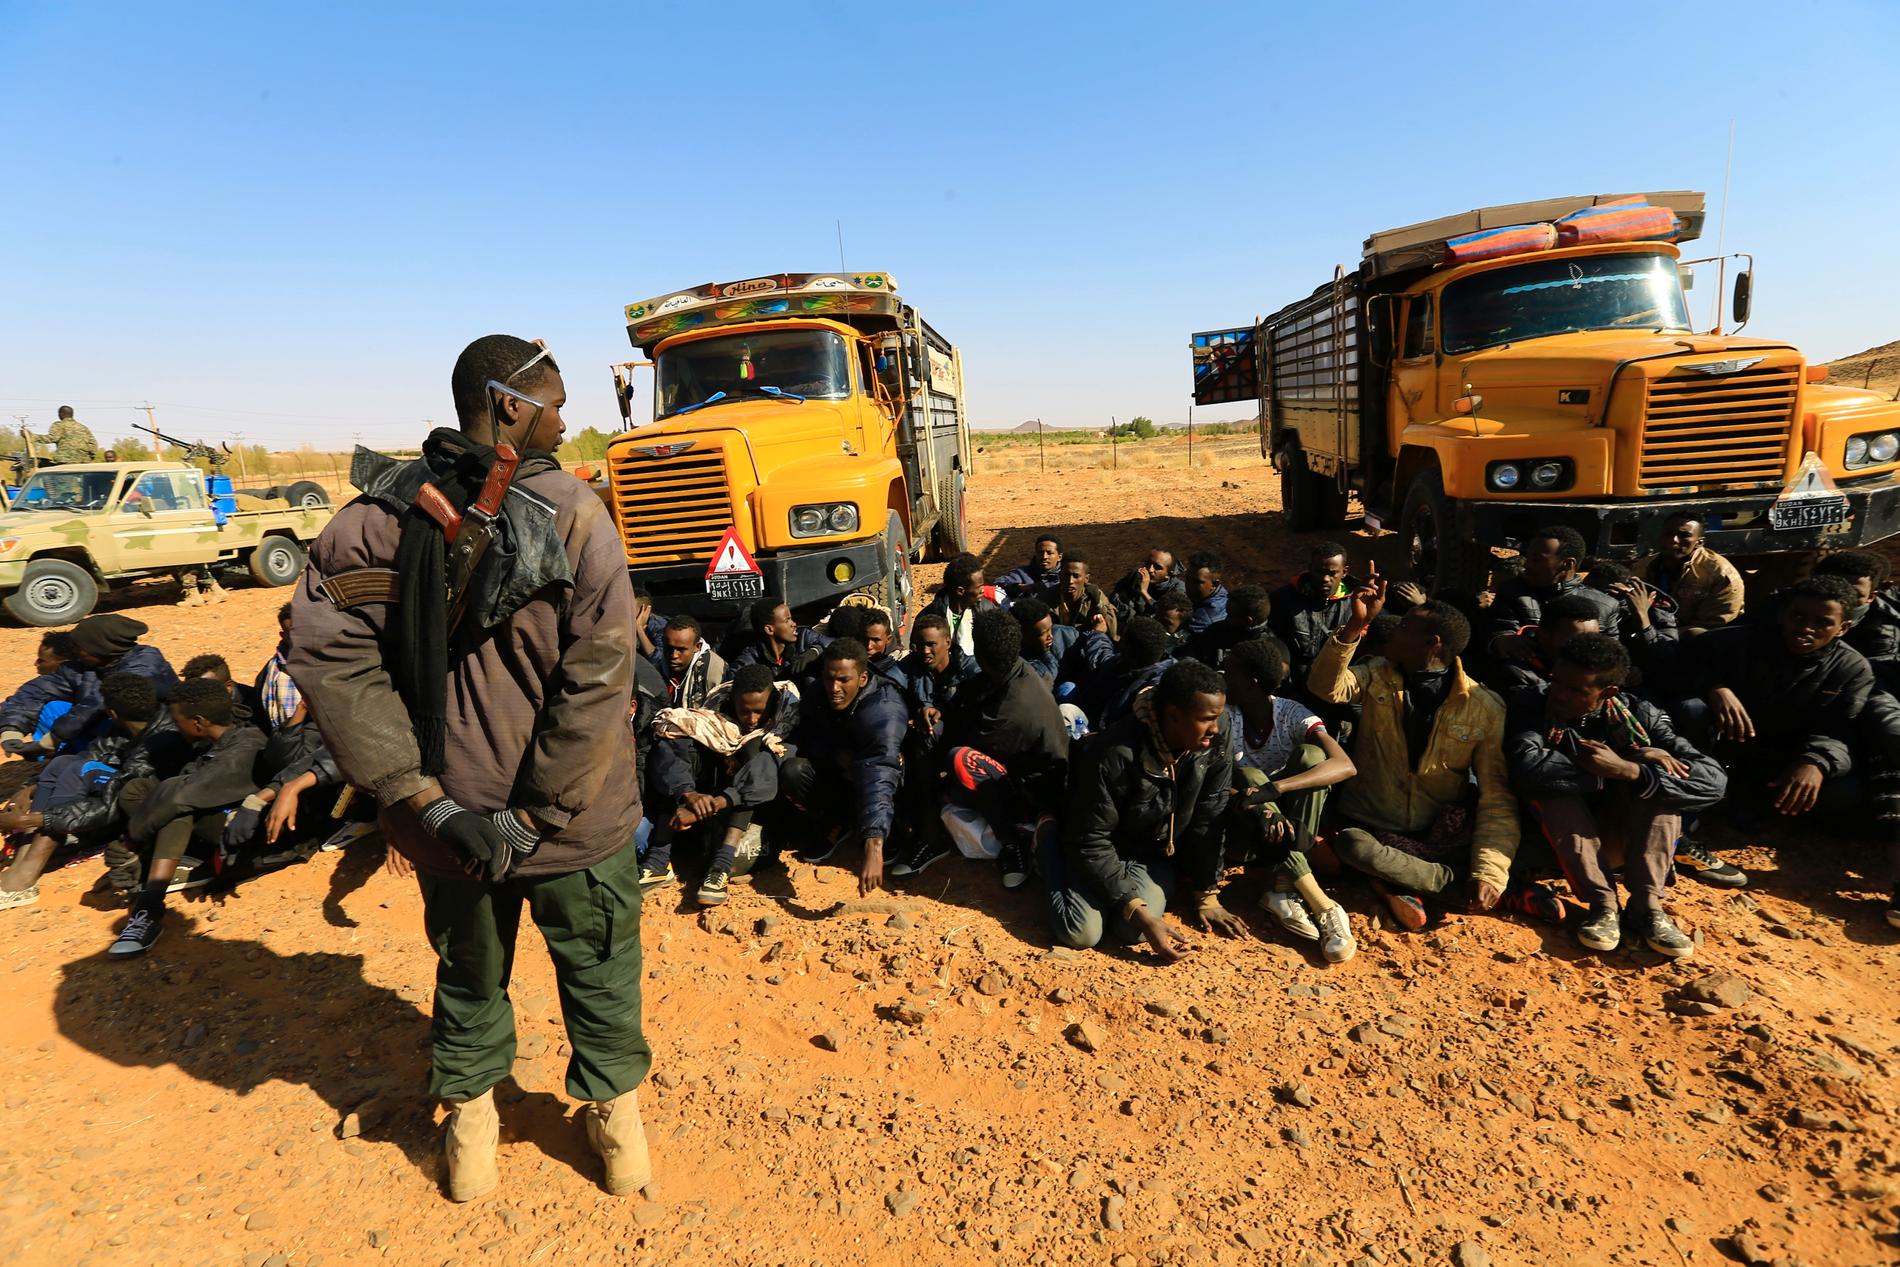 DOBBELTSPILL: I Sudan har migrasjonskontrollen for en stor del blitt utøvd av militser i allianse med regimet i Khartoum. De patruljerer grensen til Libya og gir seg ut for å stoppe migranter fra å dra nordover, mens de samtidig smugler folk inn i Libya i samarbeid med aktører på andre siden av grensen, skriver Gunnar M. Sørbø. 